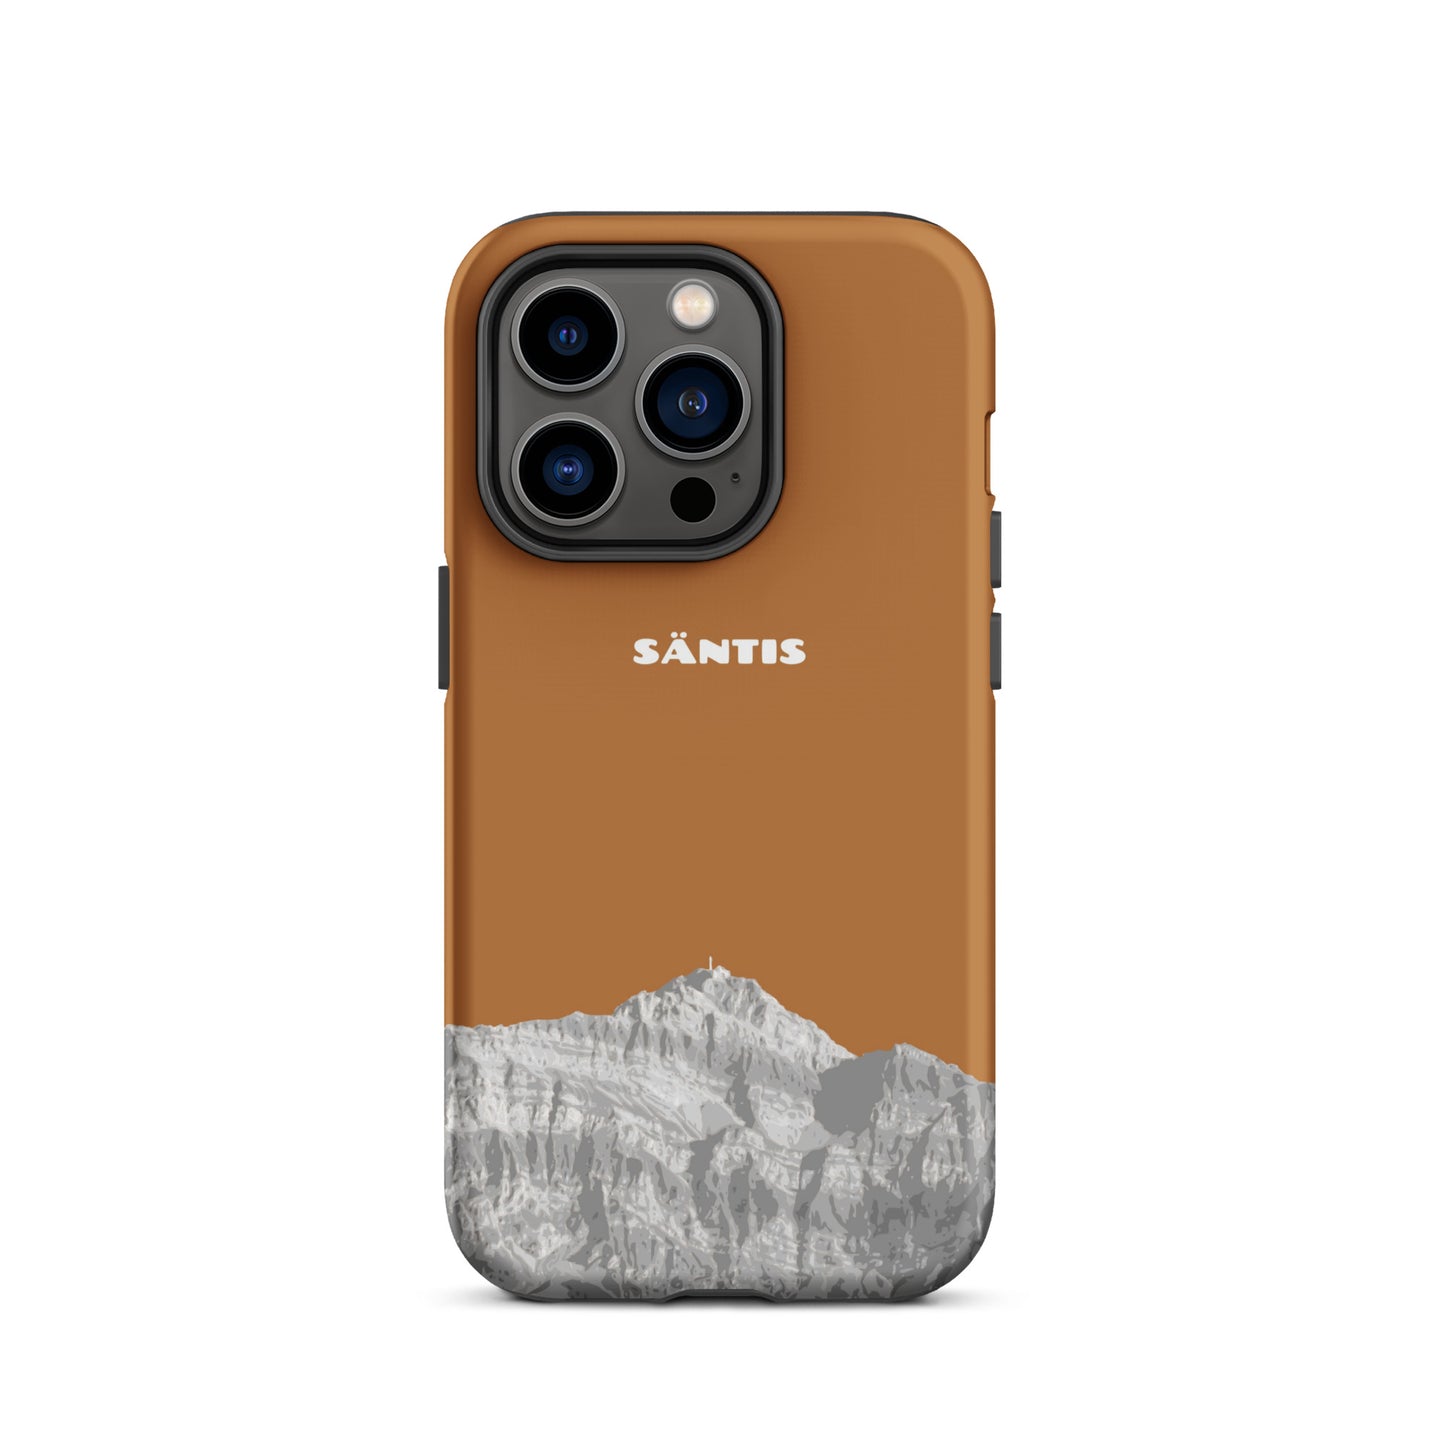 Hülle für das iPhone 14 Pro von Apple in der Farbe Kupfer, dass den Säntis im Alpstein zeigt.